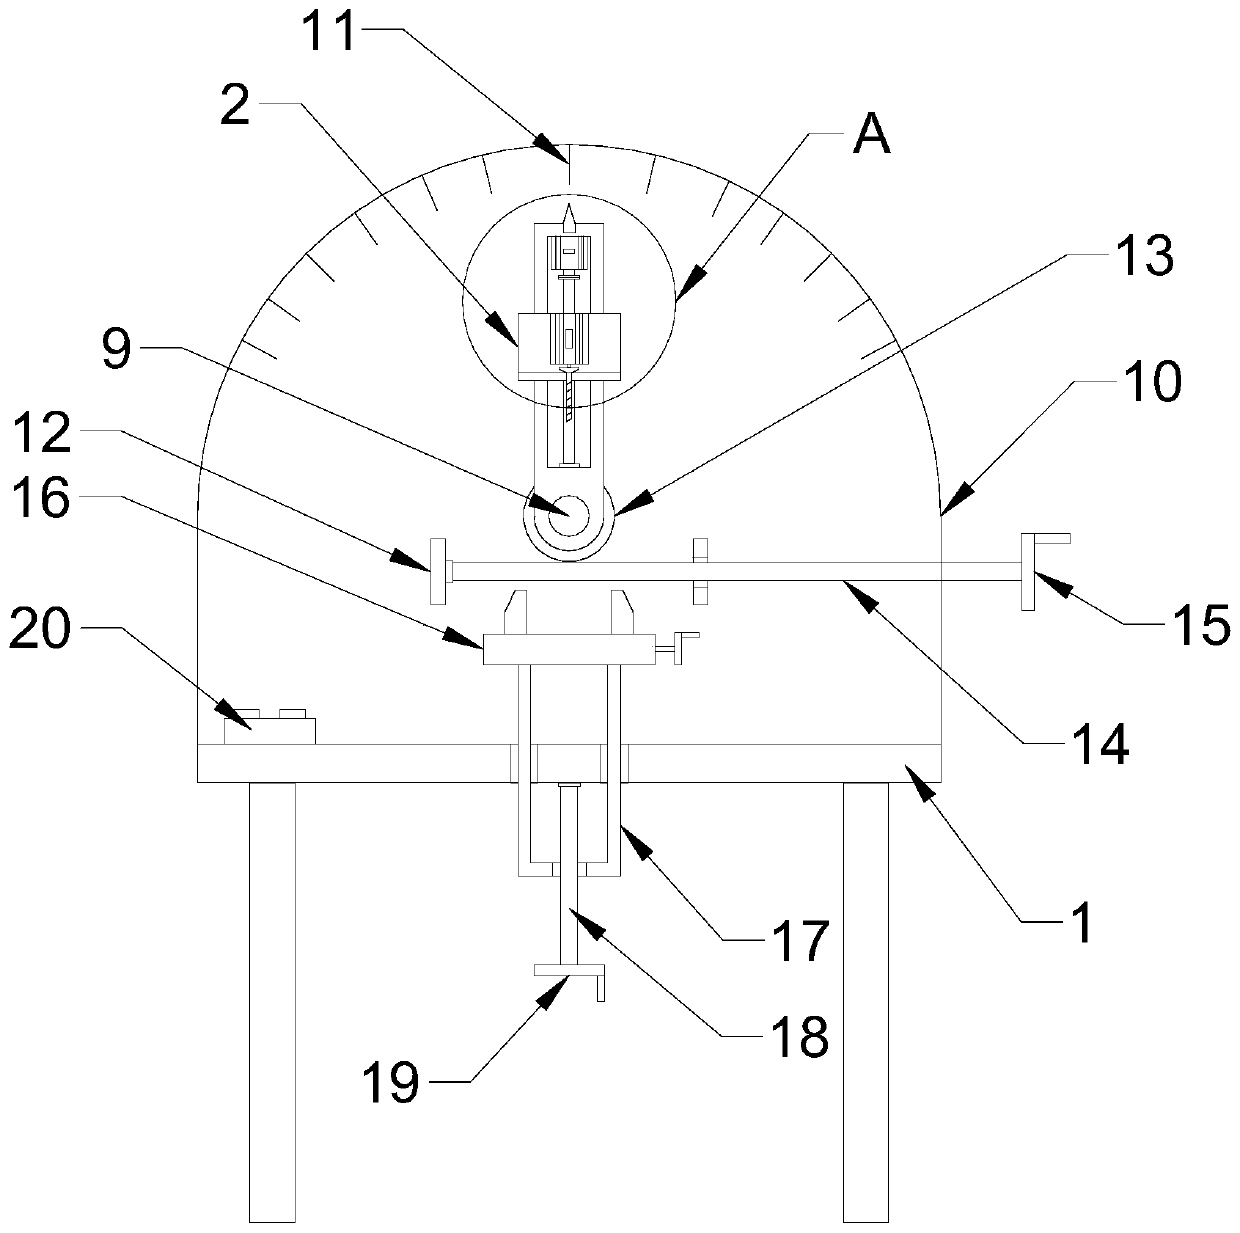 Semi-automatic multi-angle workpiece drilling device